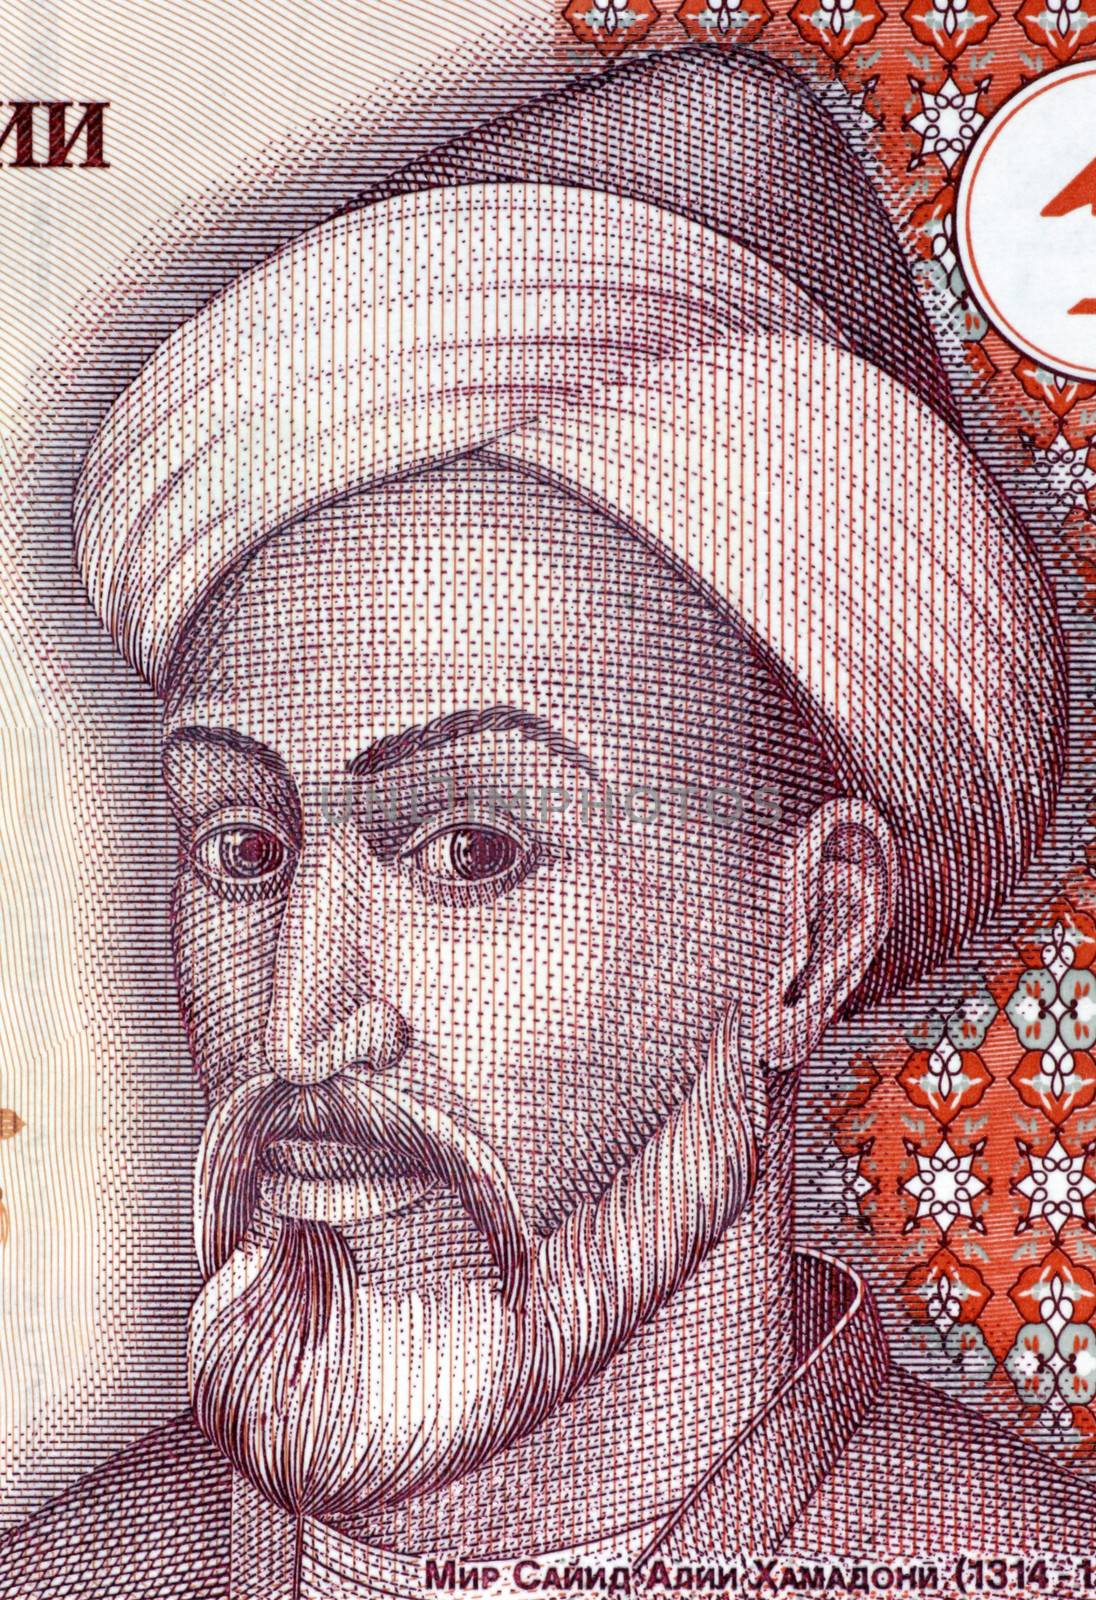 Mir Sayyid Ali Hamadani by Georgios